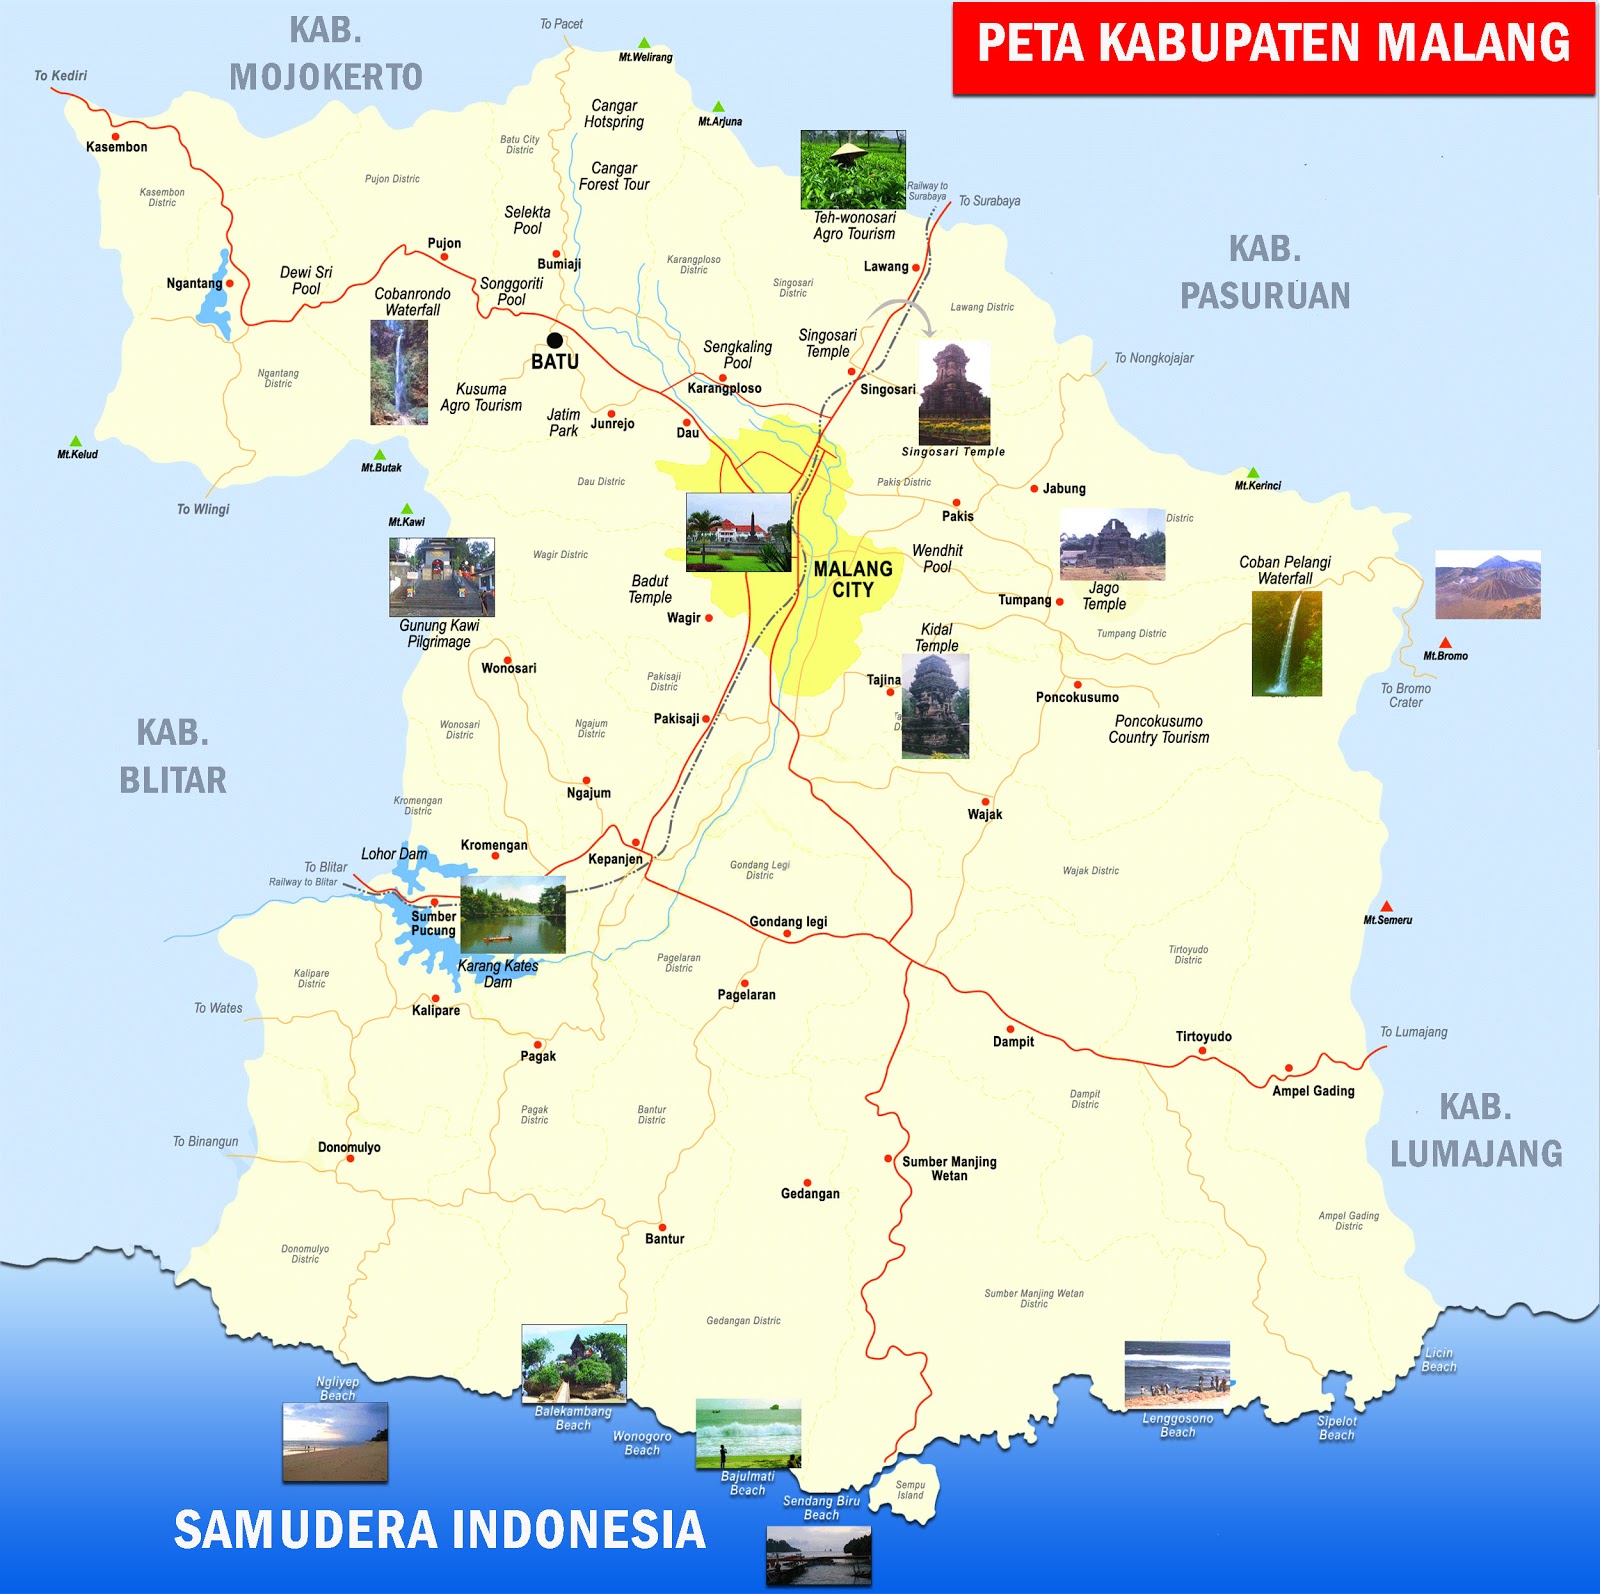  Peta Kabupaten Malang Jawa Timur Lengkap 33 Kecamatan